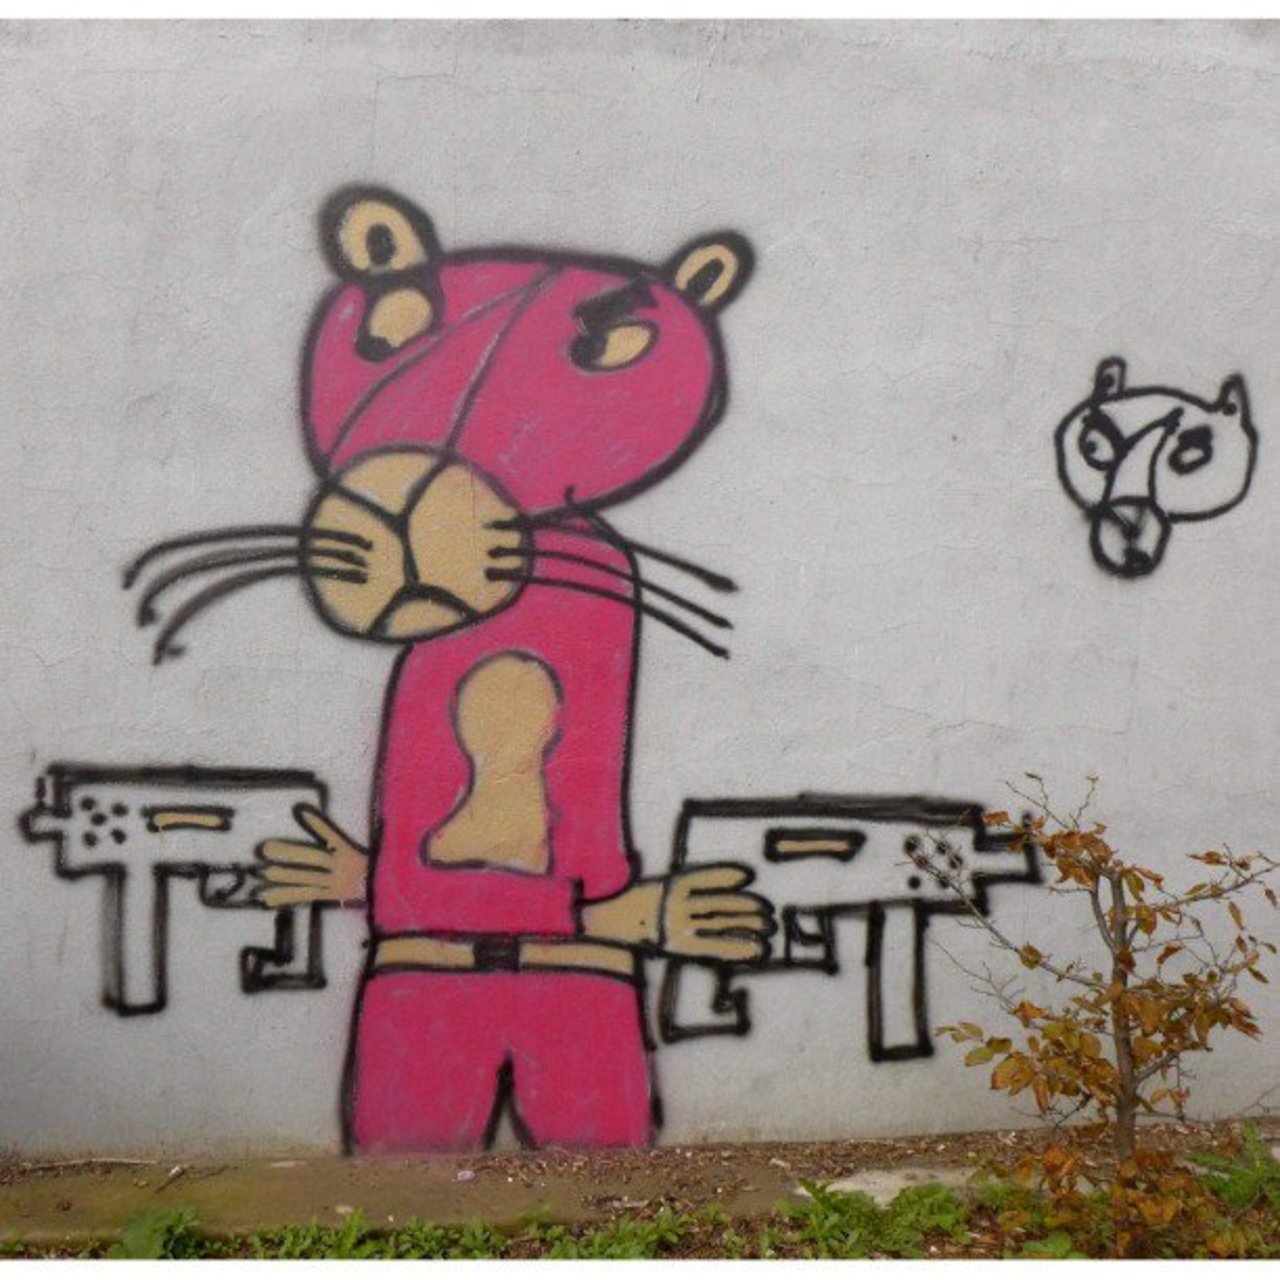 O.G Pink Panther
#GangstaPinkPanther #PinkPanther #UZI #streetart #graffiti #graff #art #fatcap #bombing #sprayart … https://t.co/iPDam8dgev